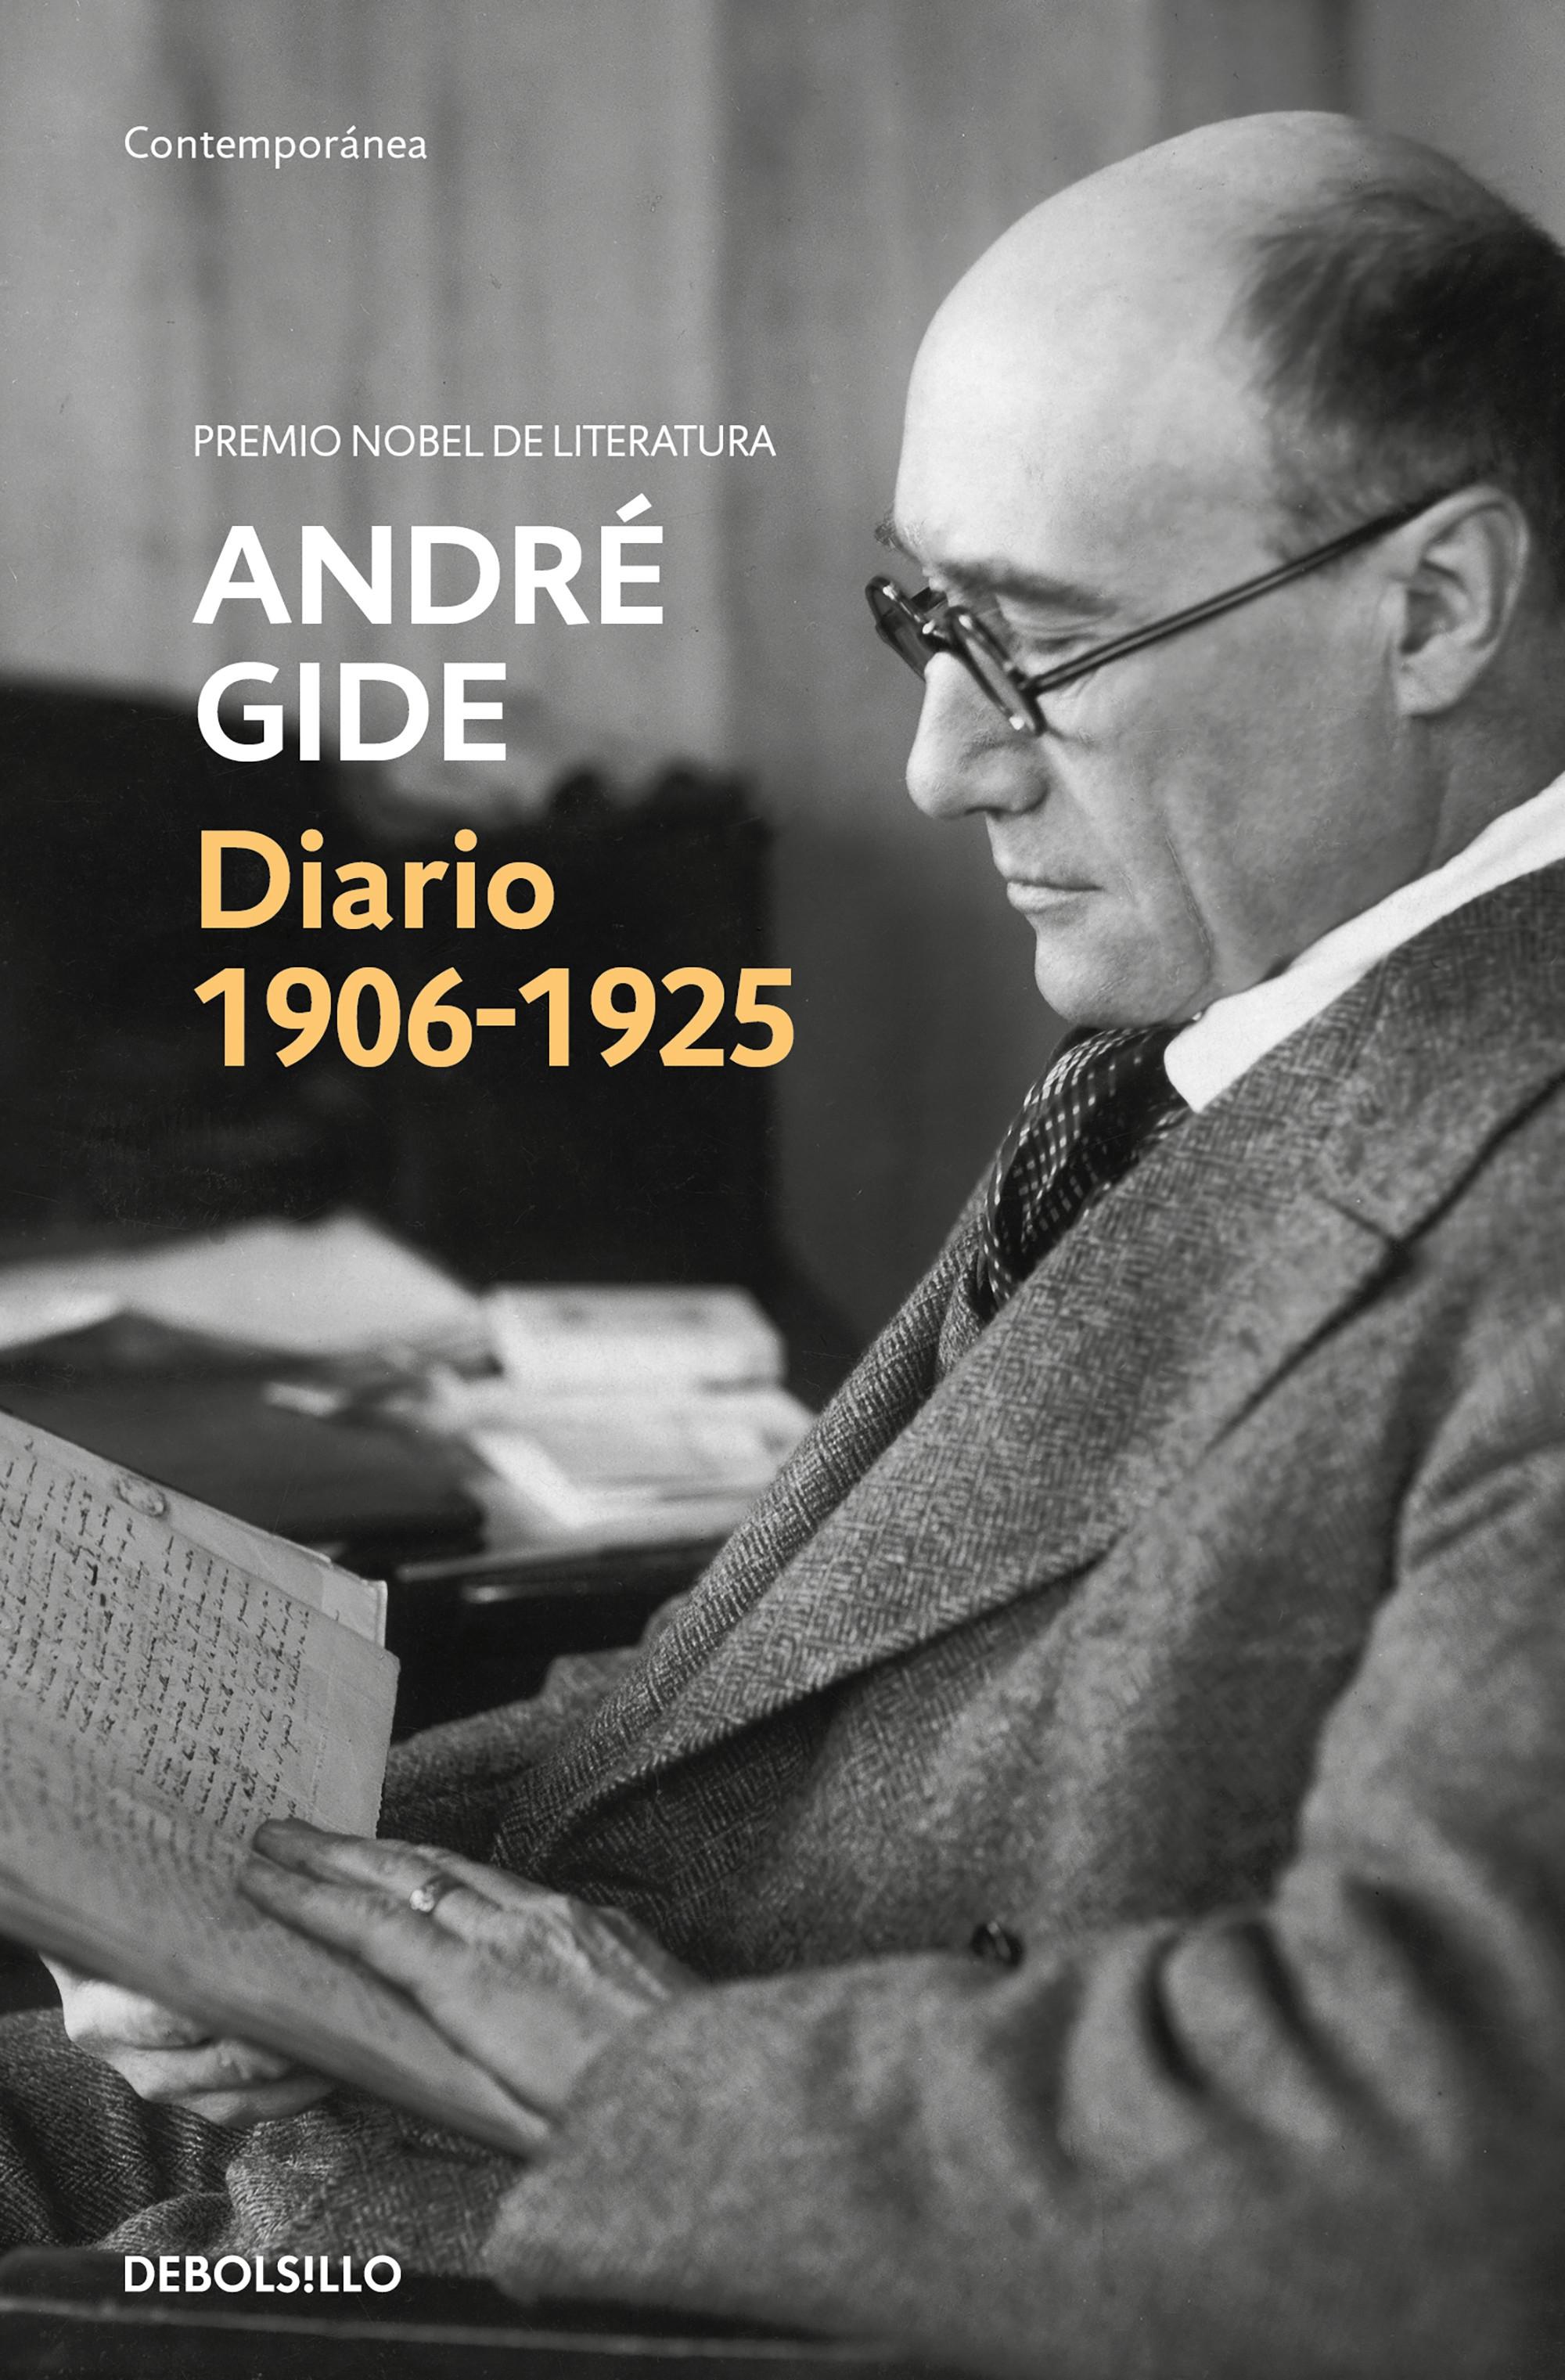 Diario, 1911-1925 "(André Gide)"